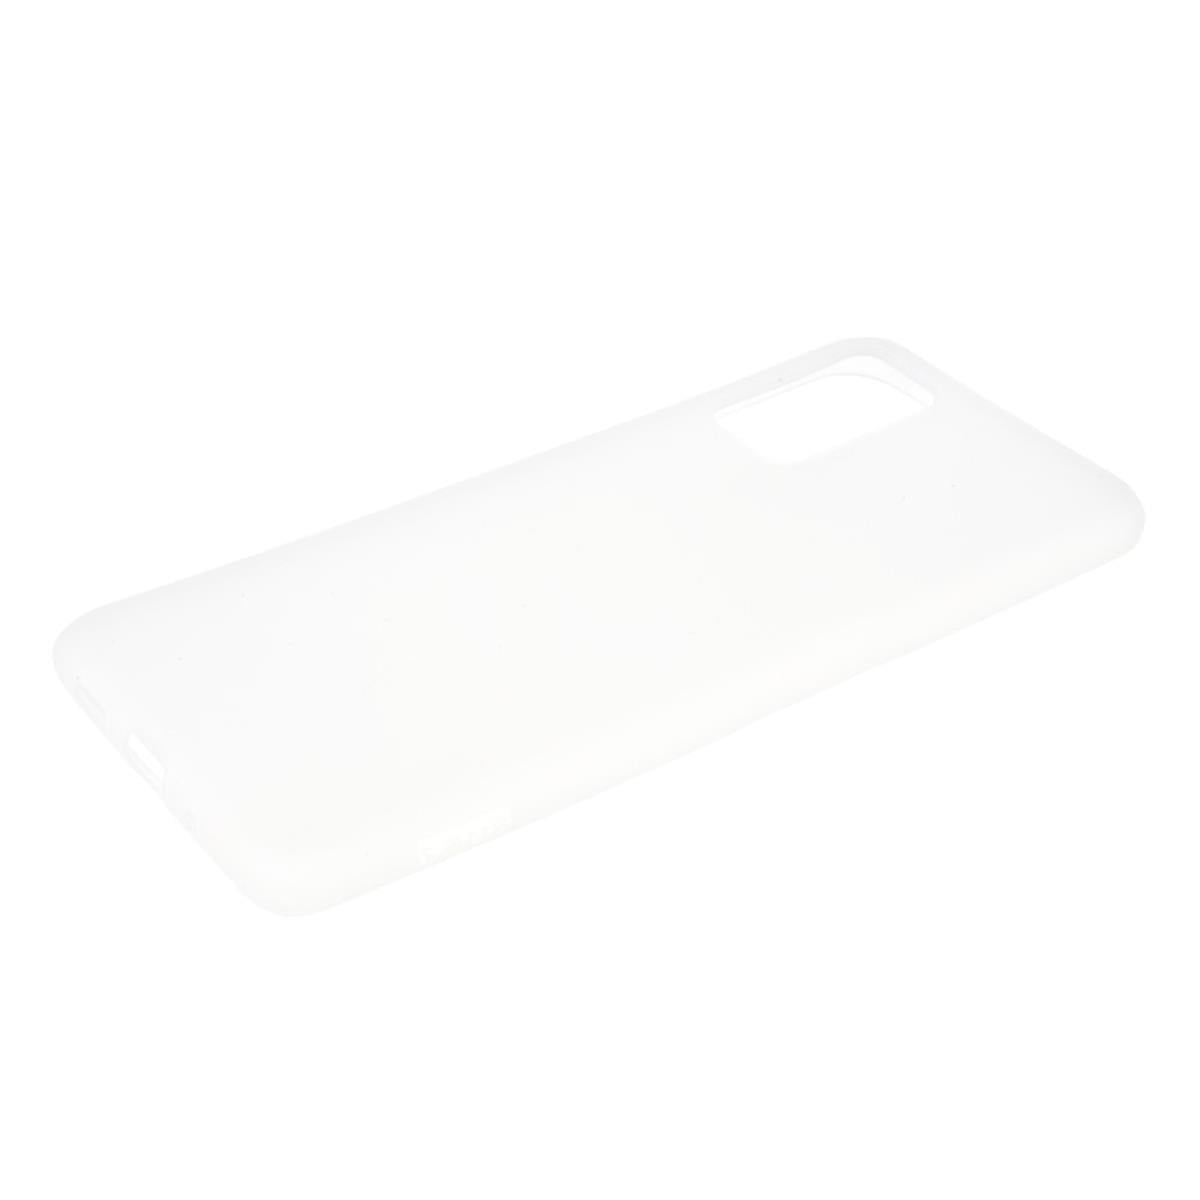 Hülle für Samsung Galaxy M30s Handyhülle Silikon Case Cover Bumper Matt Weiß